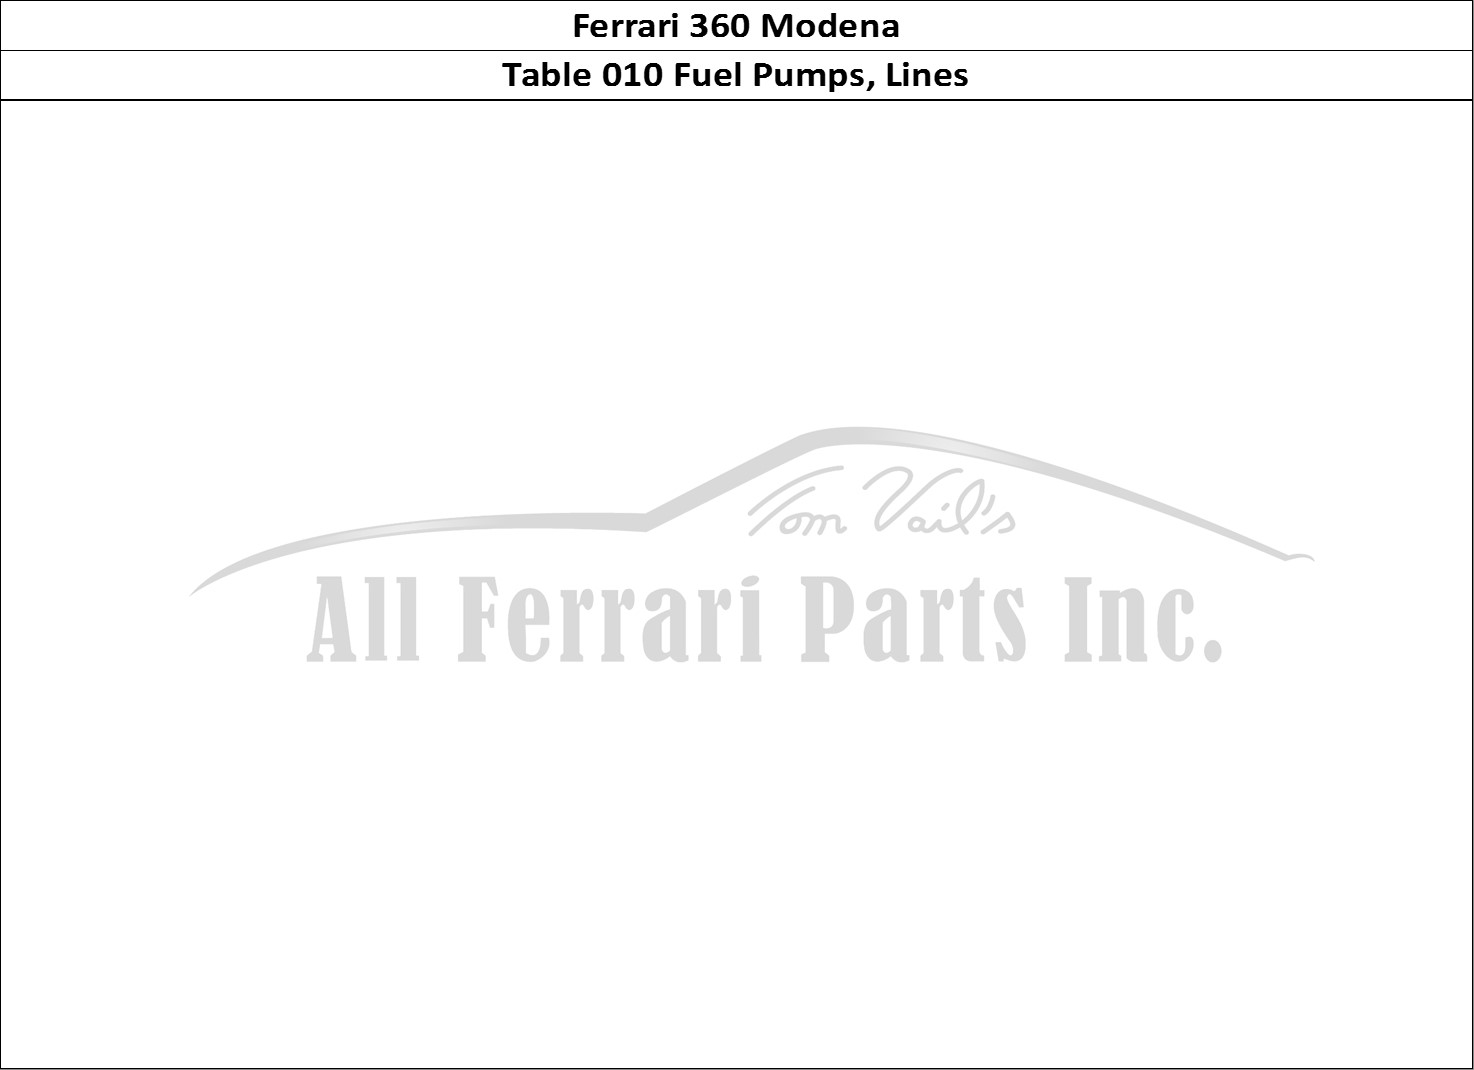 Ferrari Parts Ferrari 360 Modena Page 010 Fuel Pumps and Pipes